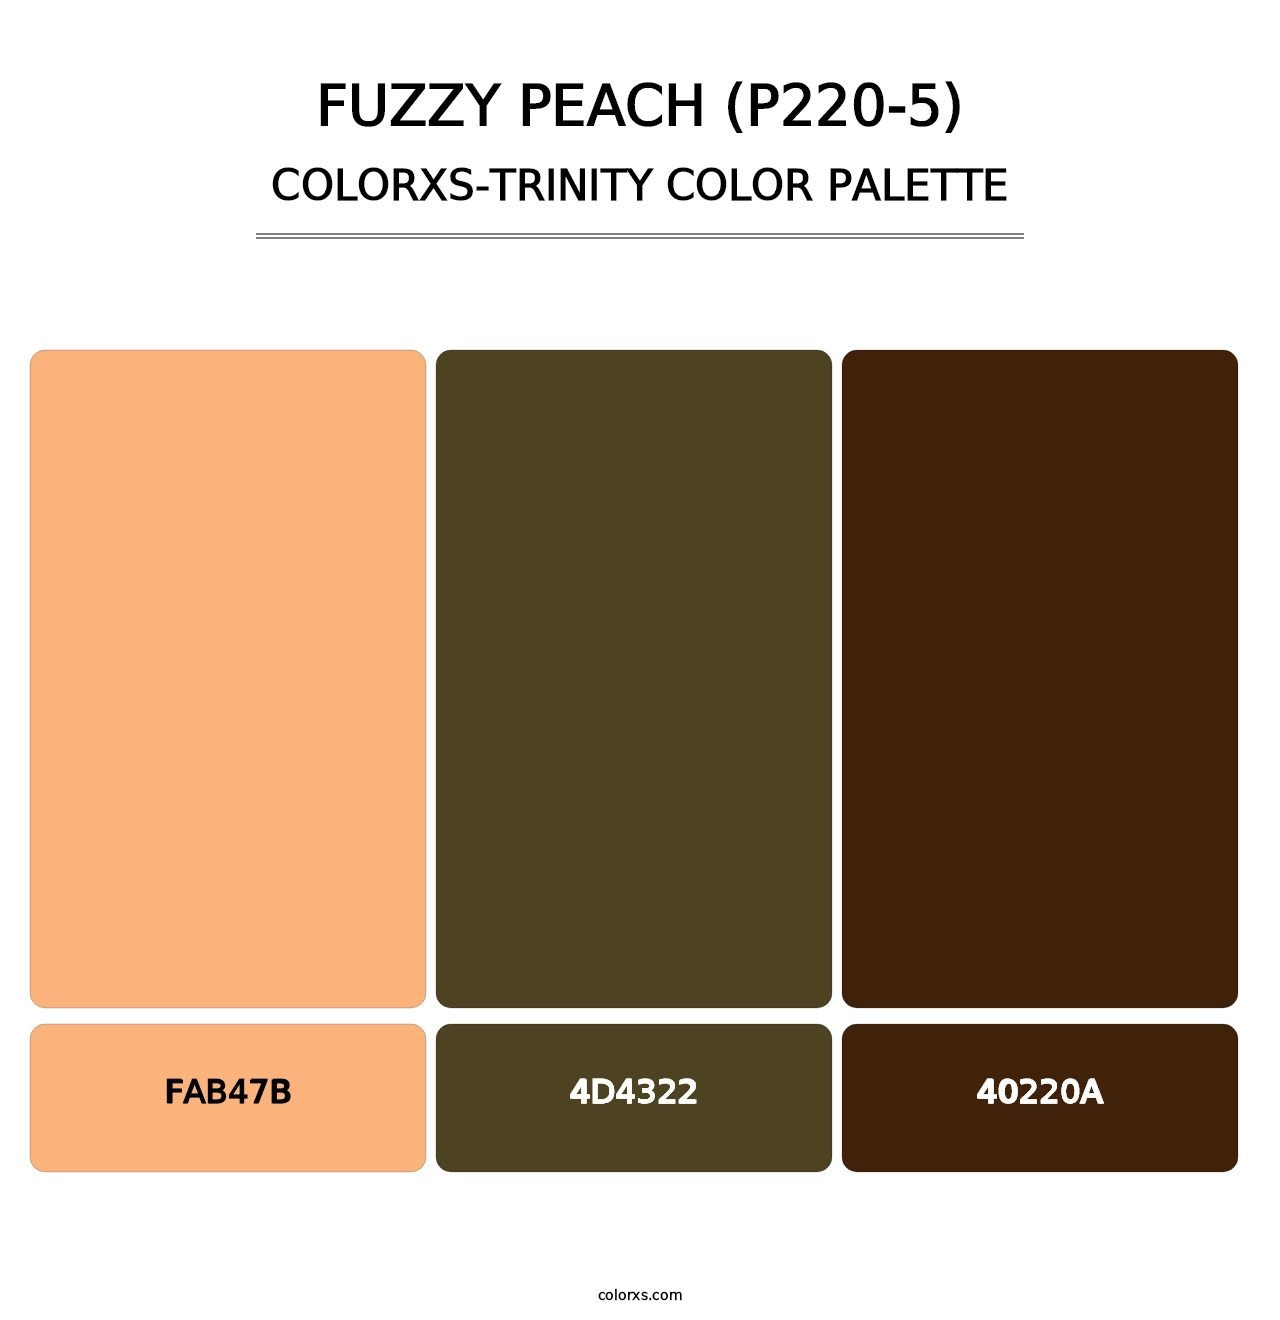 Fuzzy Peach (P220-5) - Colorxs Trinity Palette